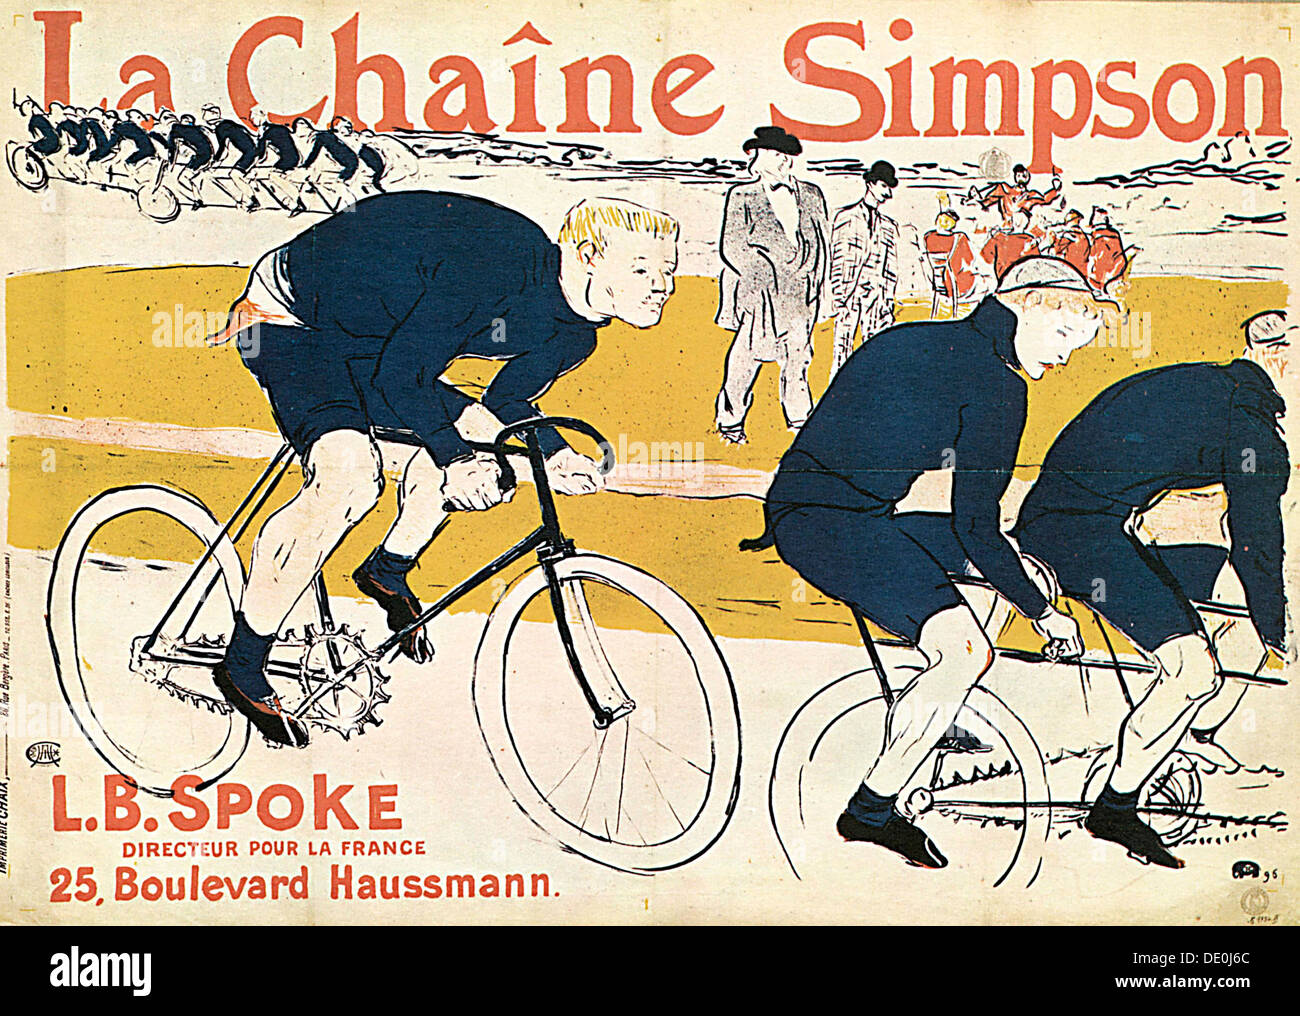 'La chaîne Simson', (Cartel publicitario), 1896. Artista: Henri de Toulouse-Lautrec Foto de stock